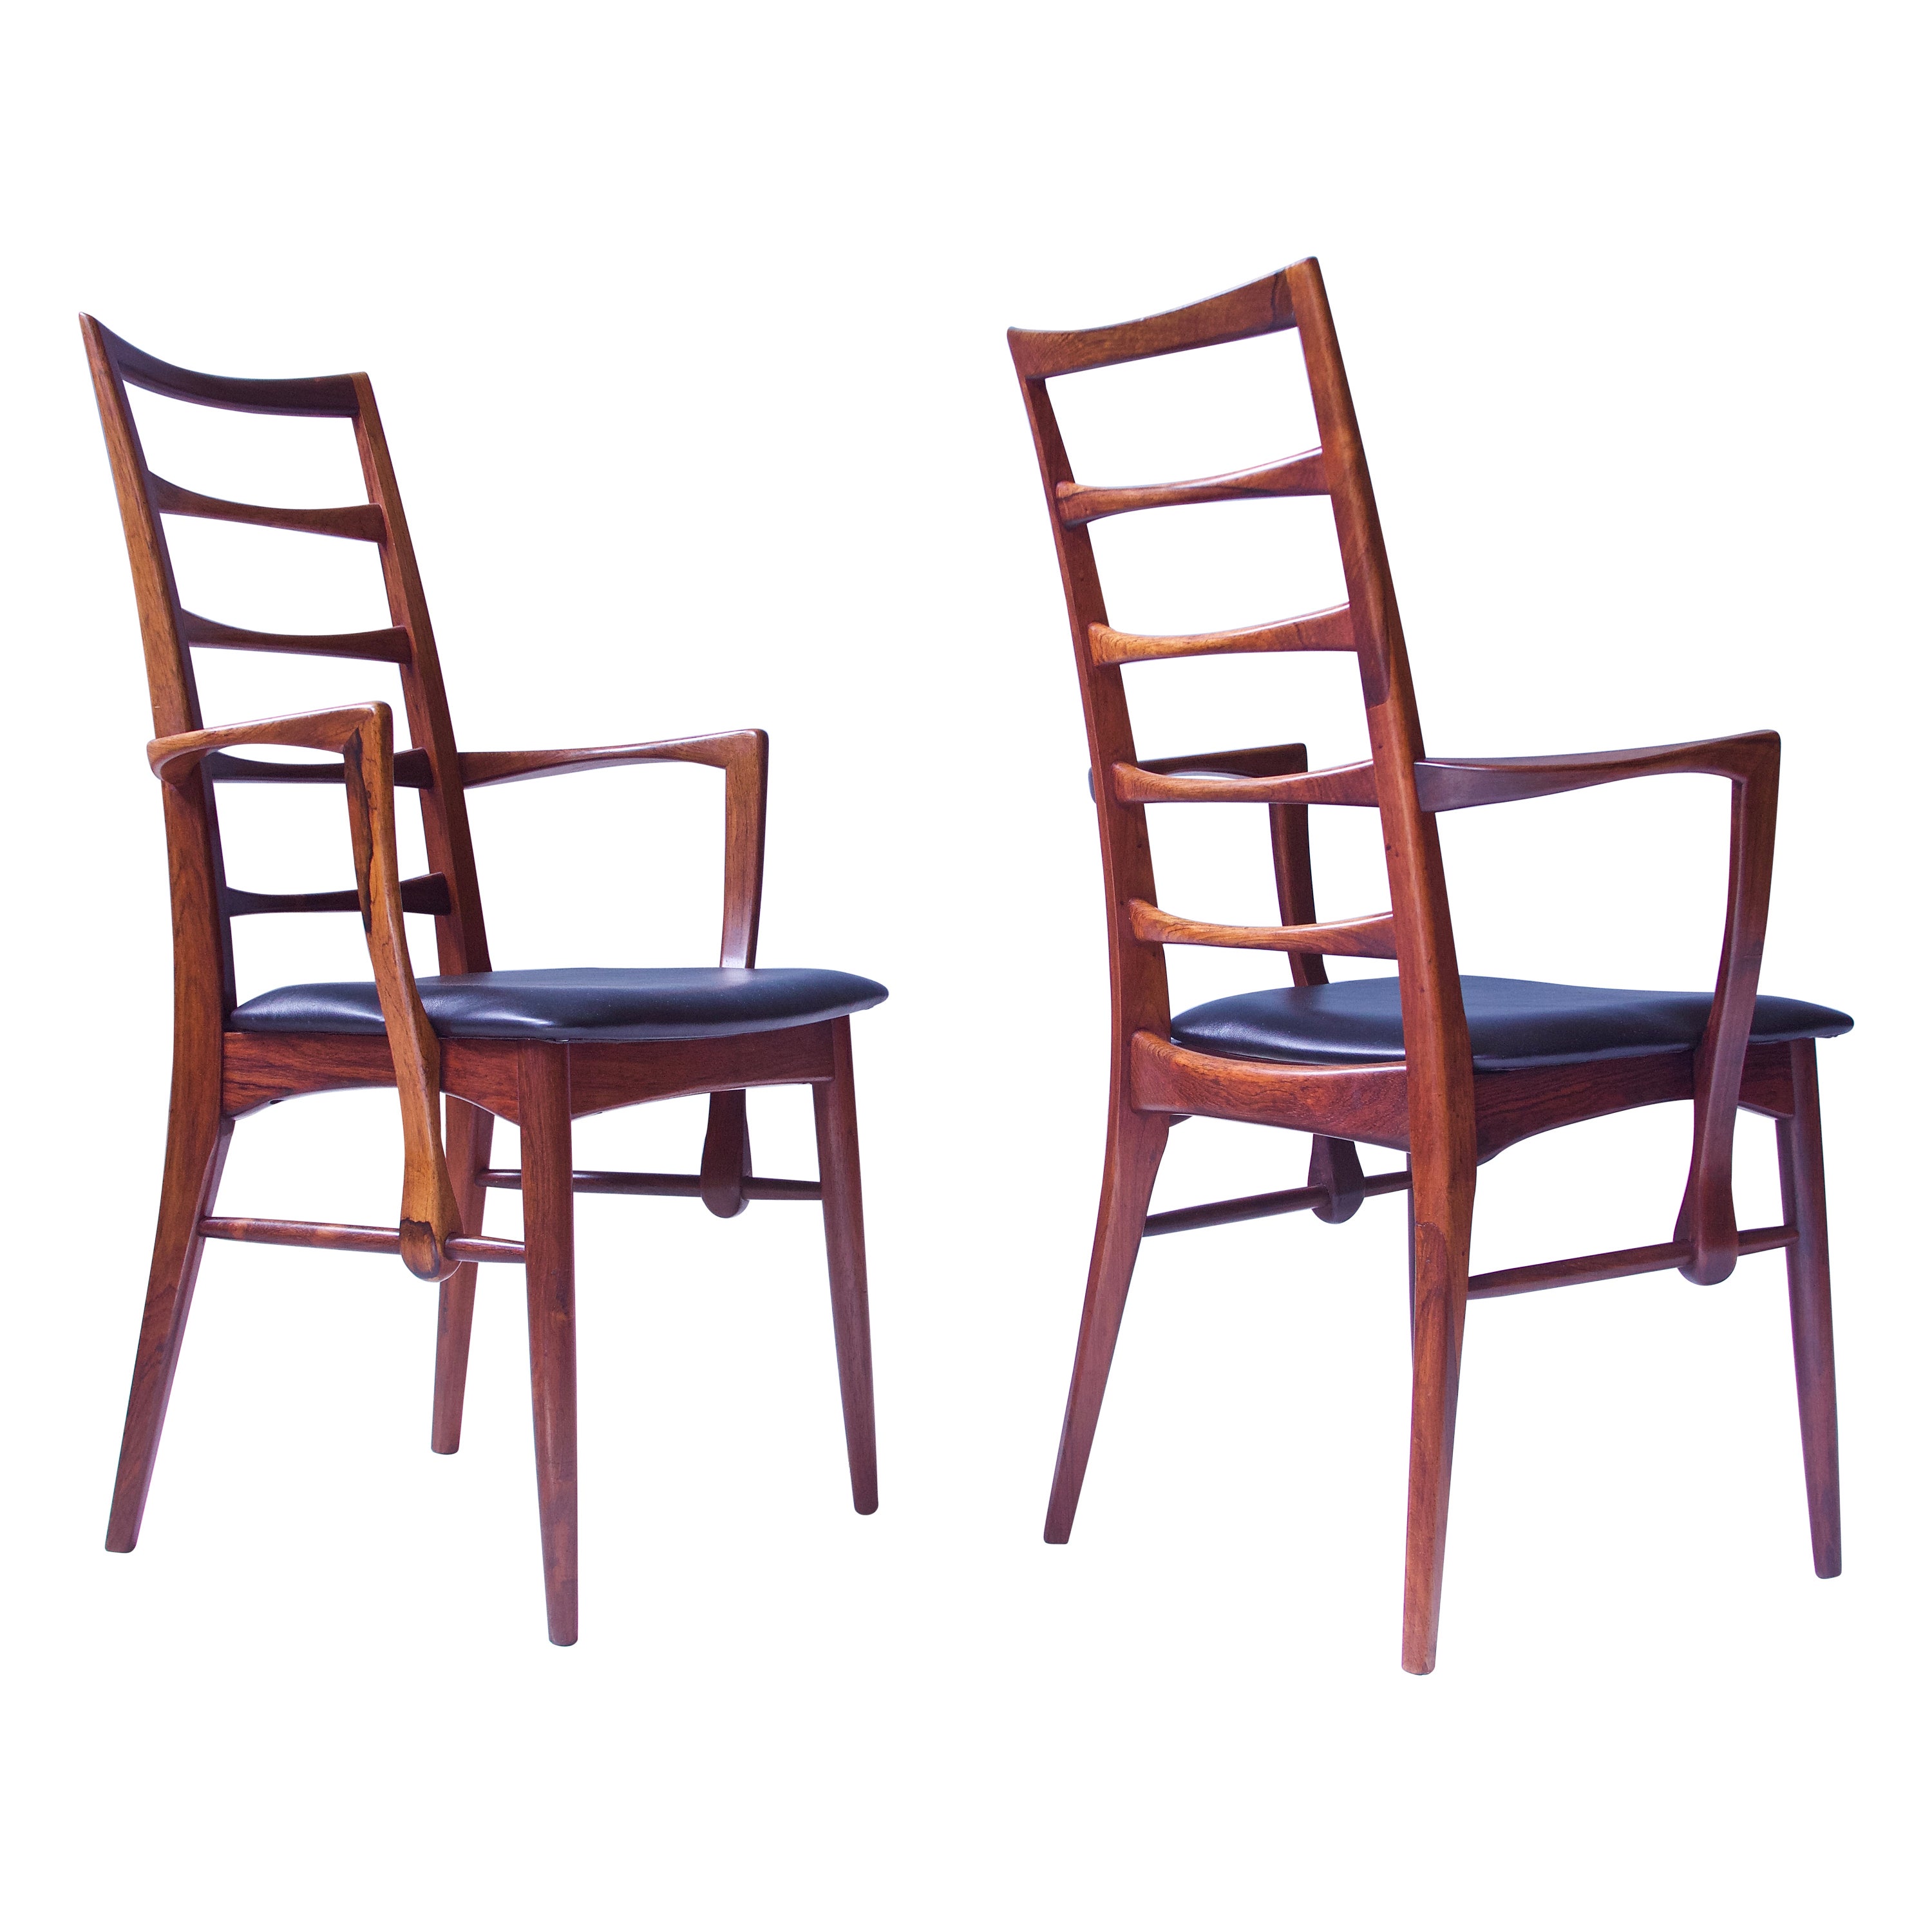 Vintage Pair of 'Lis' Chairs by Niels Koefoed for Koefoeds Møbelfabrik, 1968